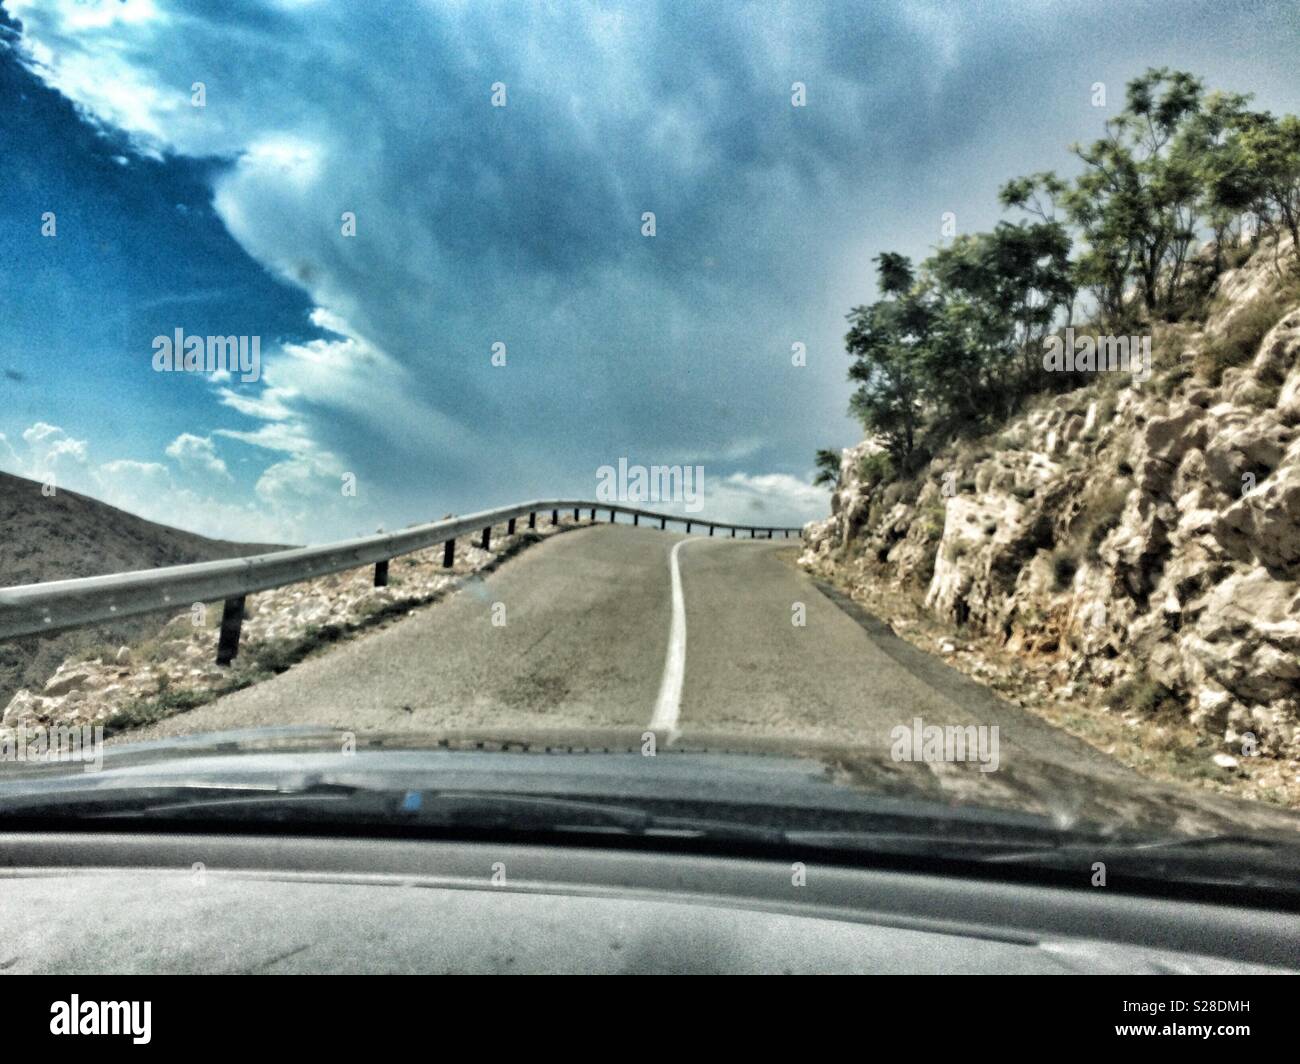 La conduite sur une route en direction de la tempête, l'île de Krk, Croatie. Banque D'Images